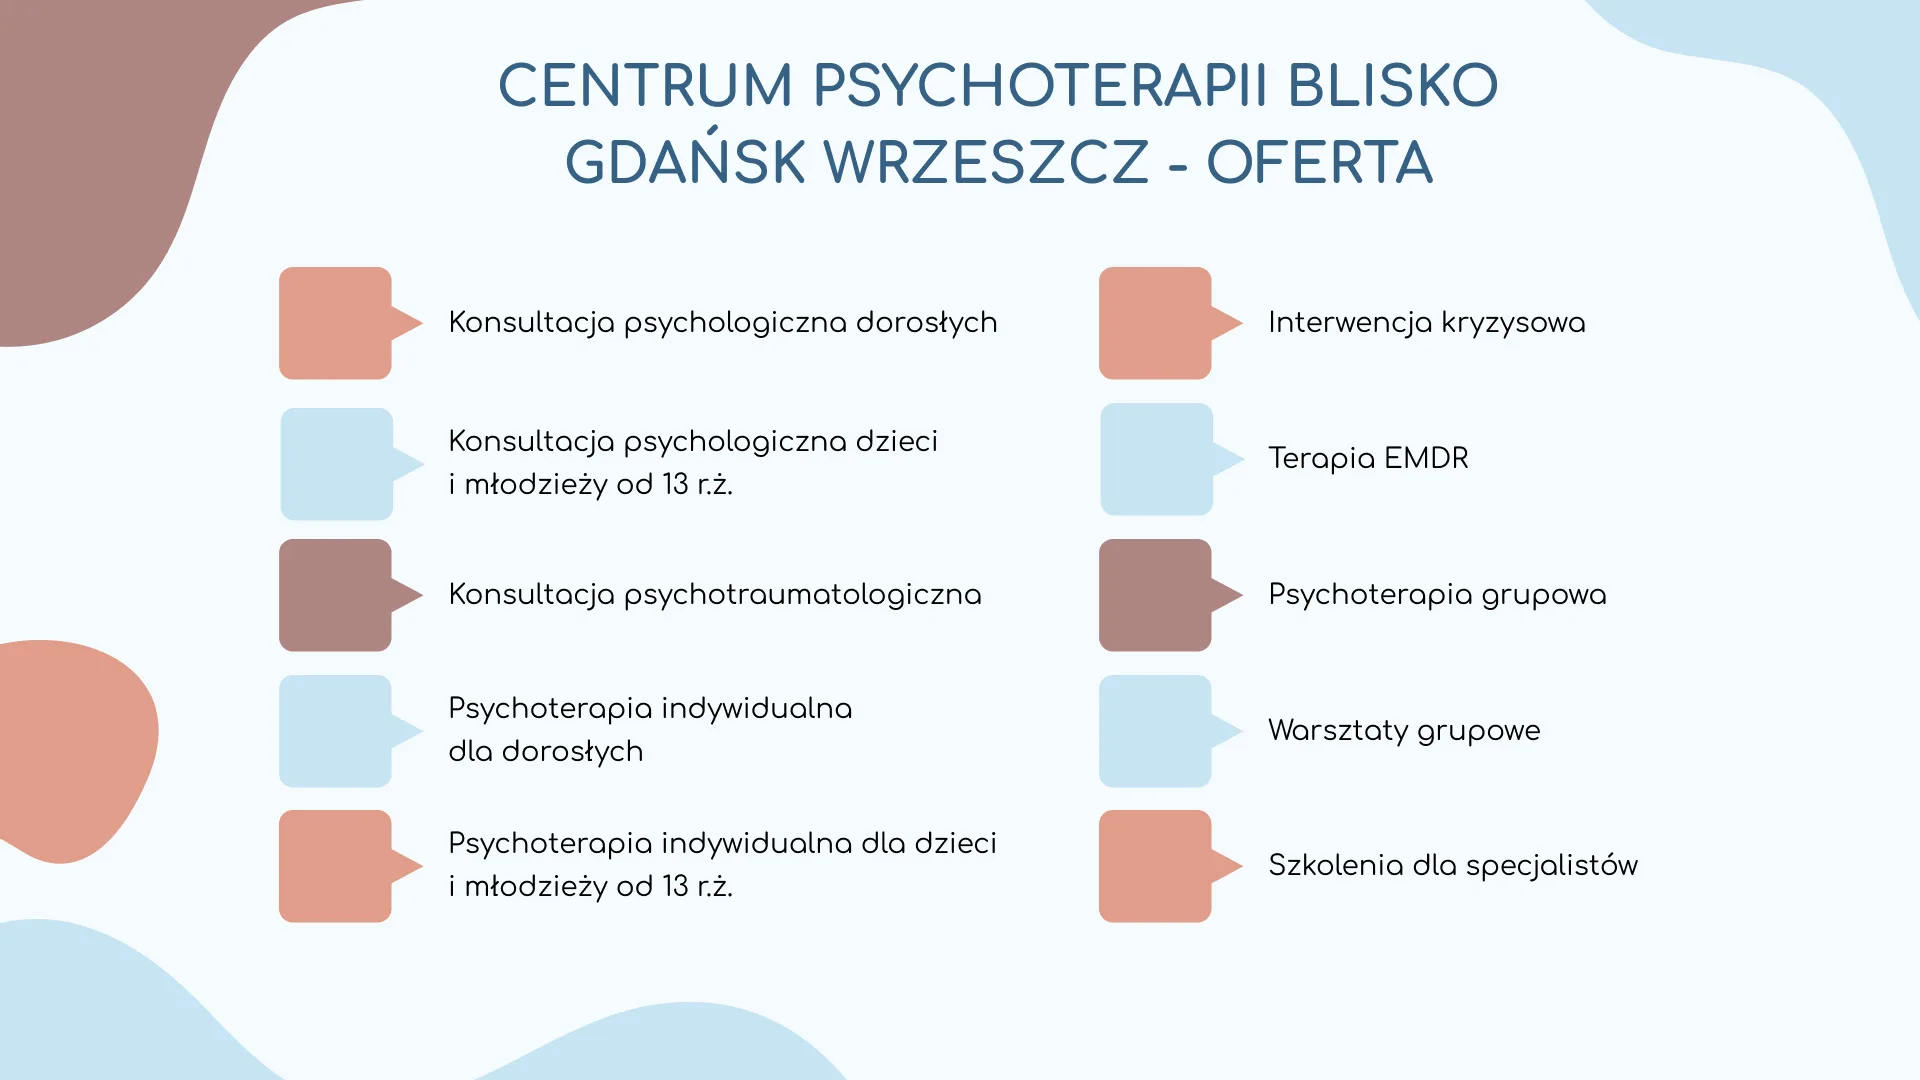 Centrum Psychoterapii Blisko Gdańsk Wrzeszcz - oferta